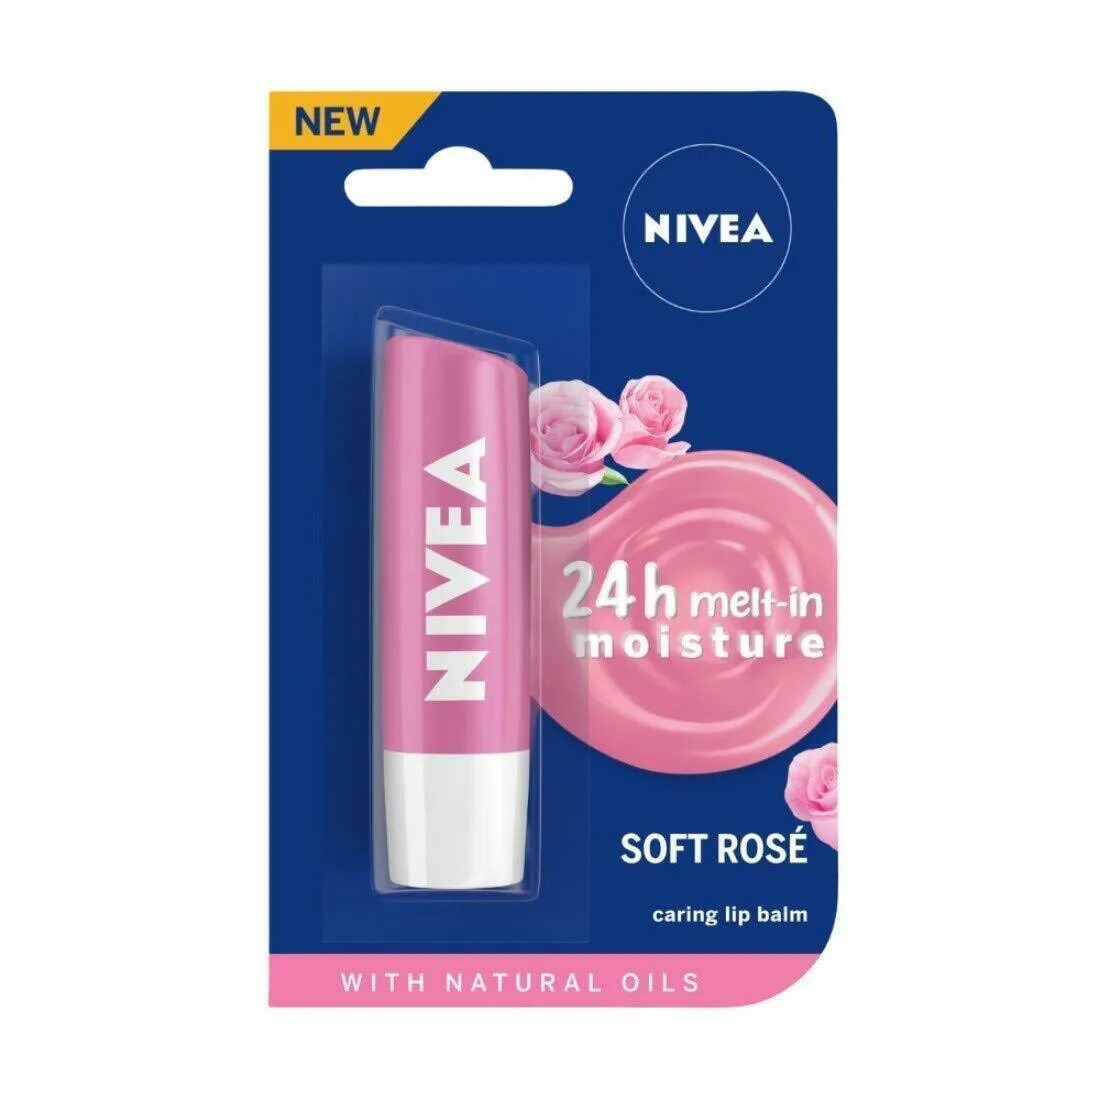 Nivea Rose бальзам для губ. Nivea Lip Balm, 4.8 g. Nivea Lip Care бальзам. Soft Rose Nivea бальзам для губ.